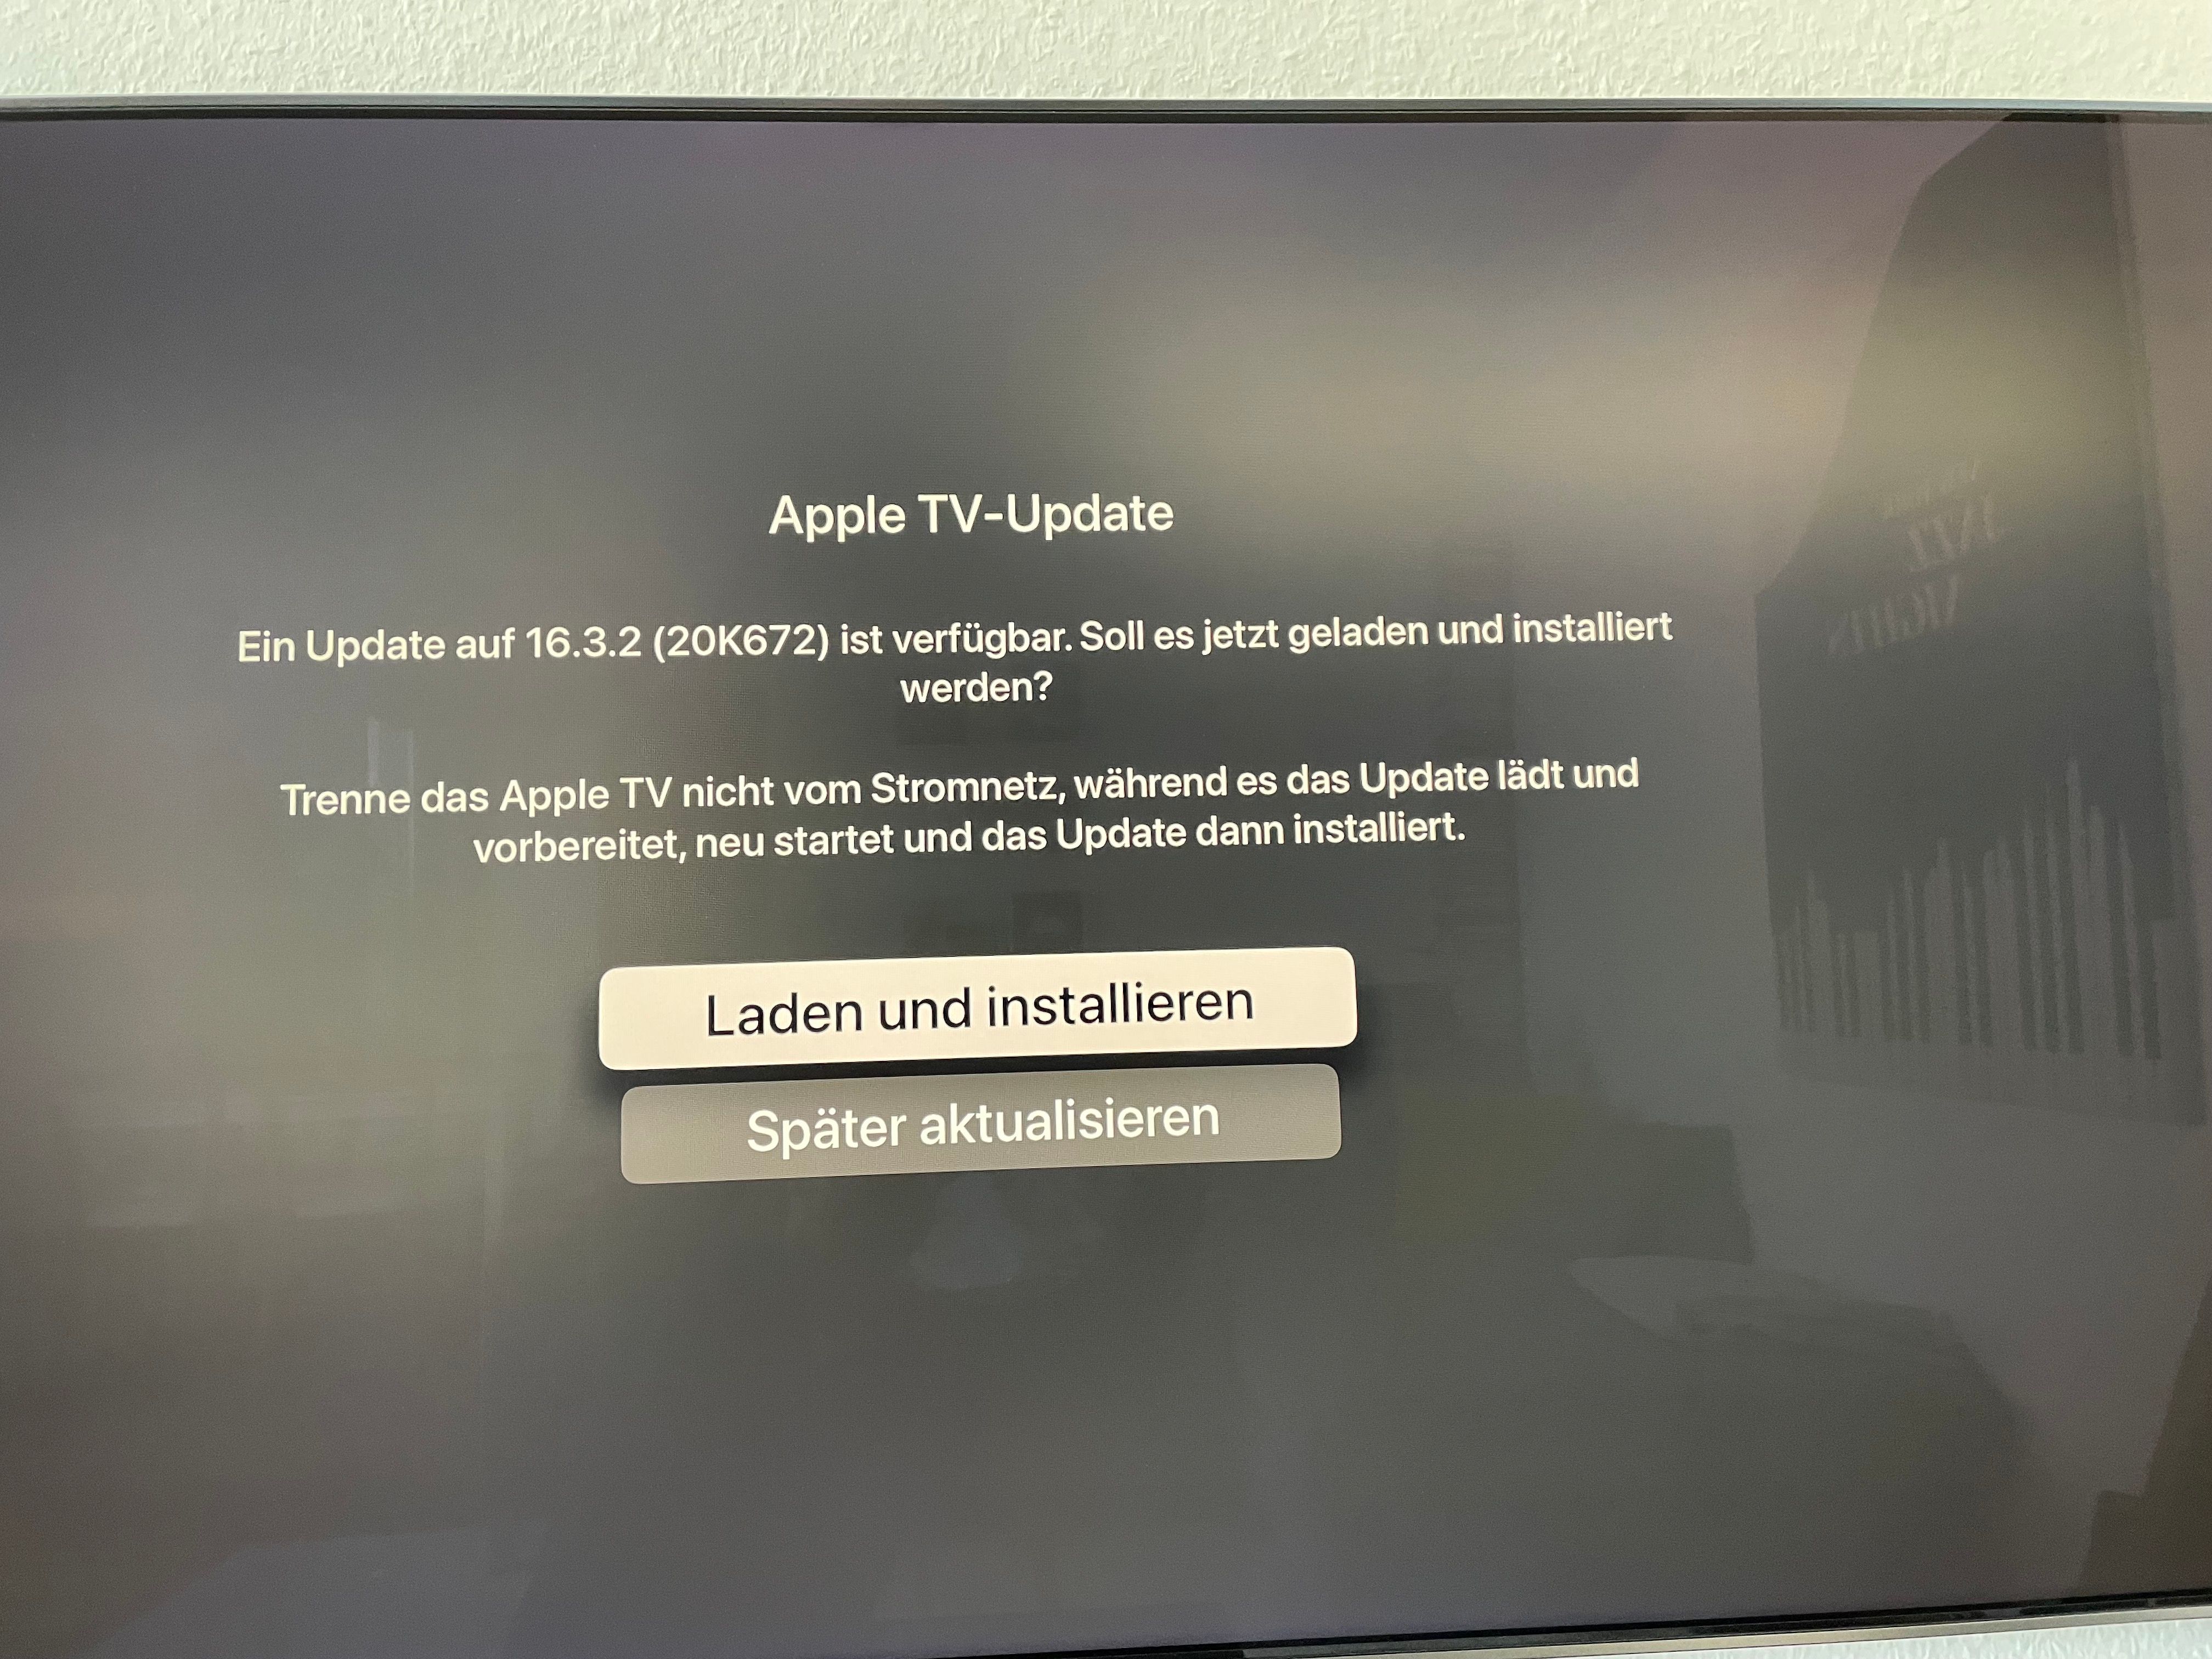 Samsung QLED: Automatische Erkennung von Apple TV funktioniert nicht -  Samsung Community